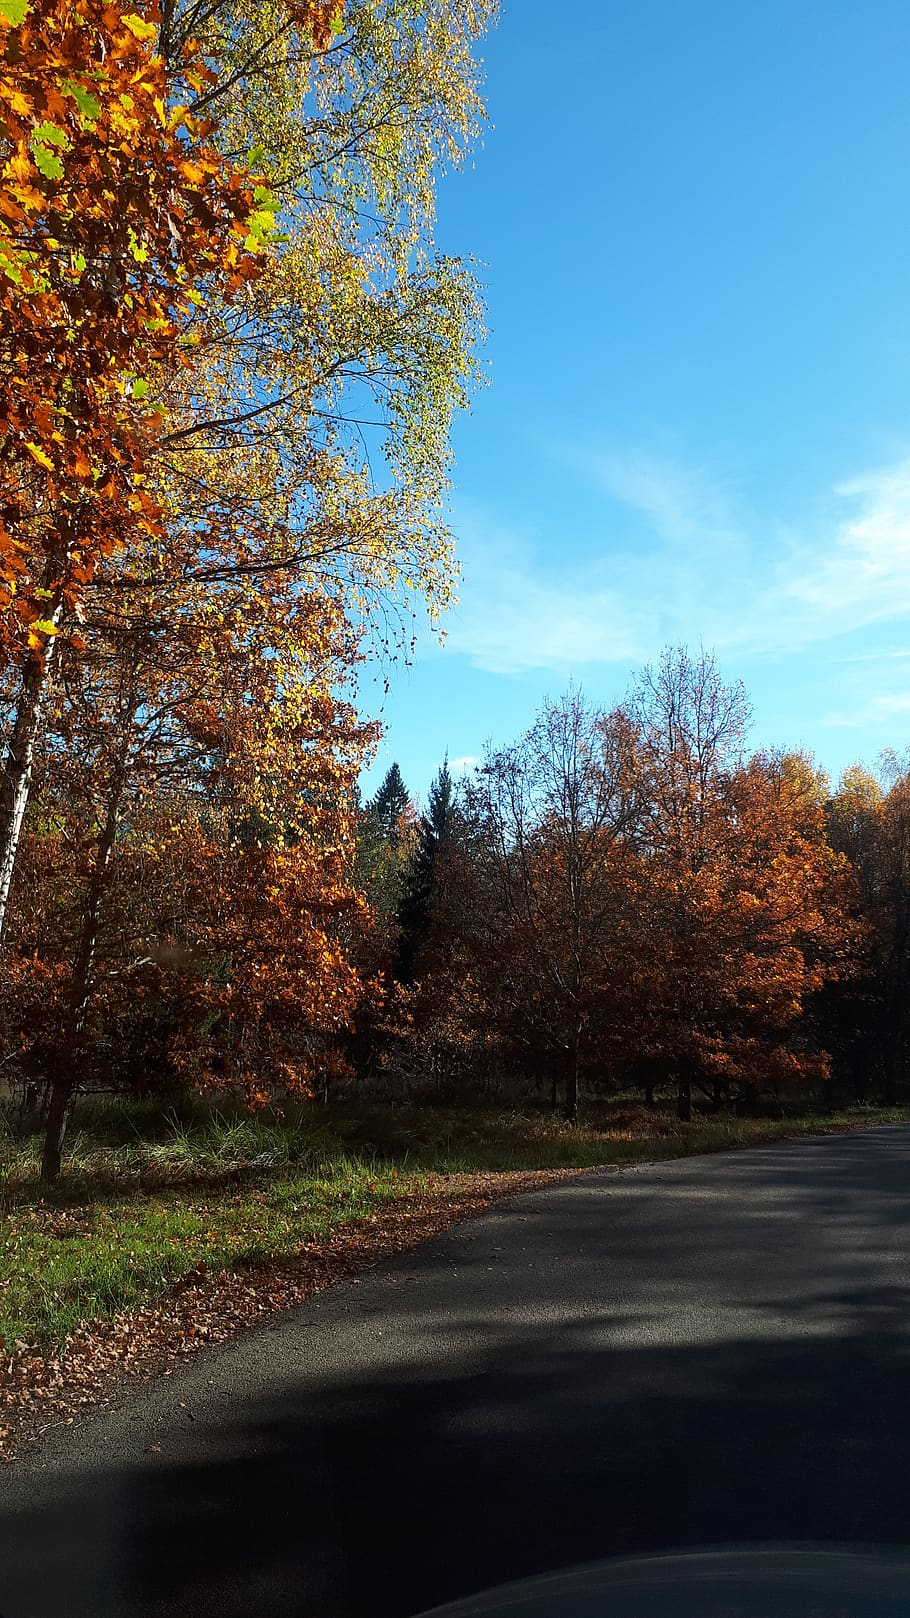 hojas de otoño, otoño, árbol, camino, planta, la carretera, transporte, cambio, cielo, belleza en la naturaleza